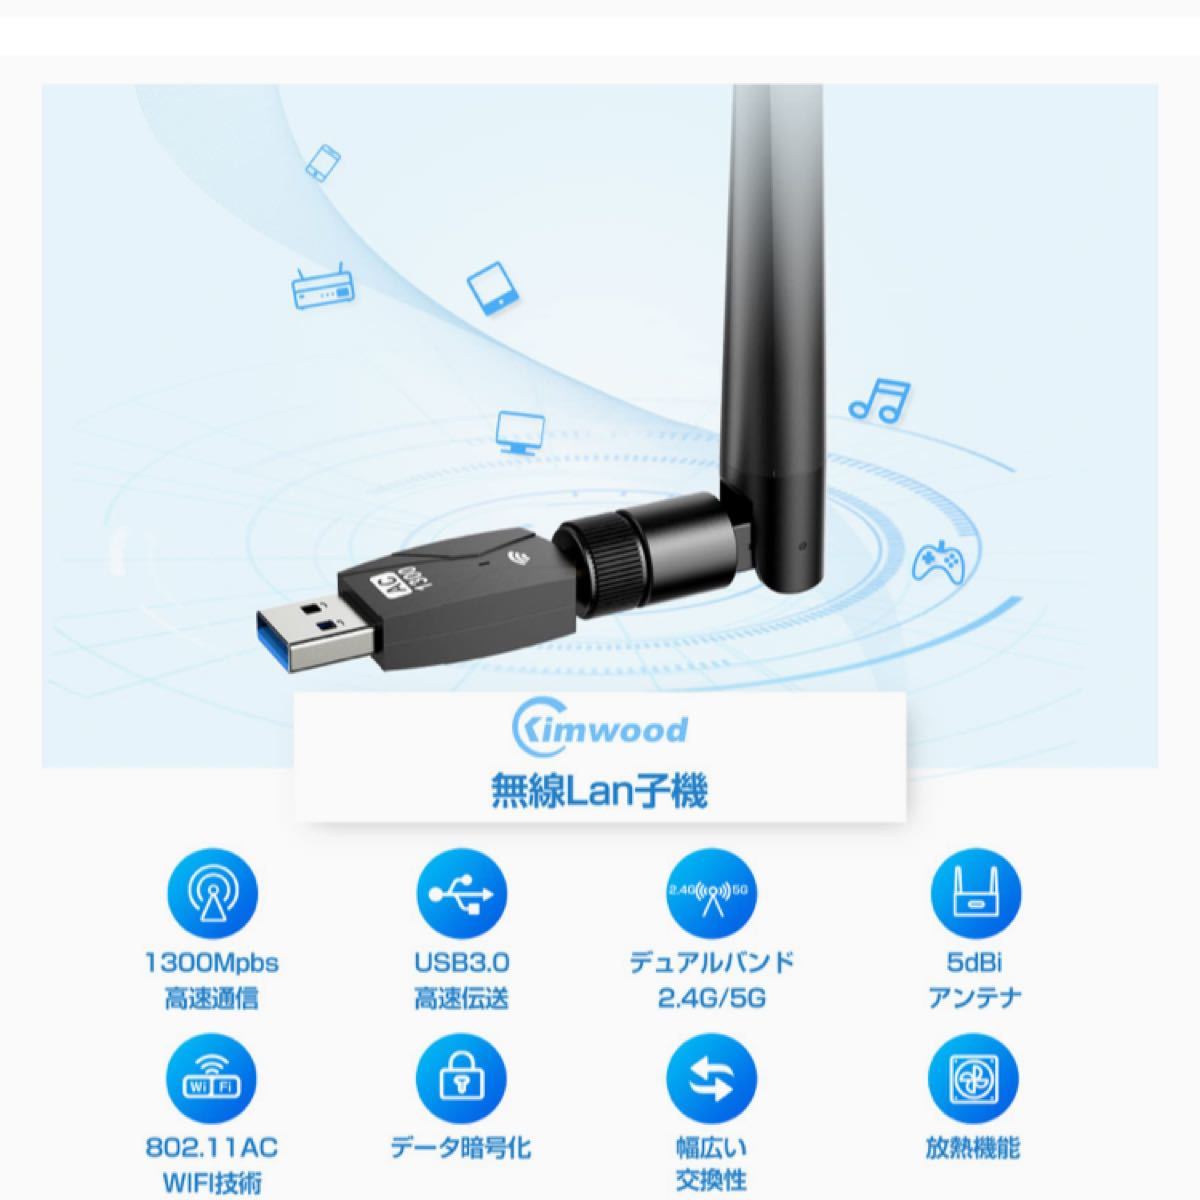 2022 wifi usb 1300Mbps USB3.0 無線lan 子機 2.4G/5G デュアルバンド 5dBi超高速通信 